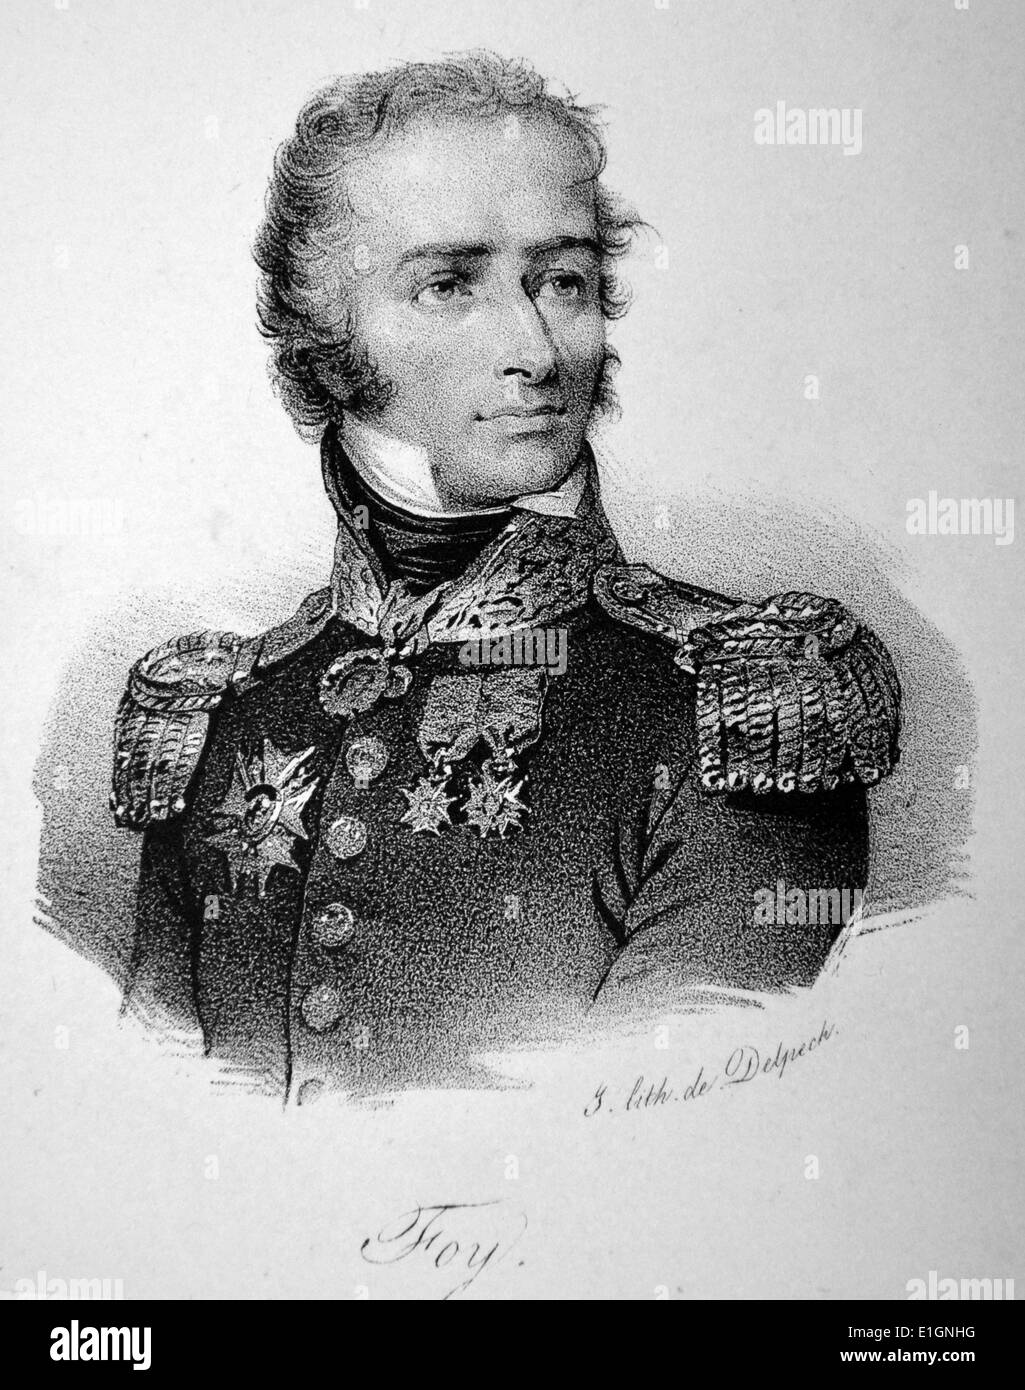 Maximilien Sébastien Foy (1775-1825) soldat français et commandant pendant les guerres napoléoniennes. Lithographie, Paris, c1840. Banque D'Images